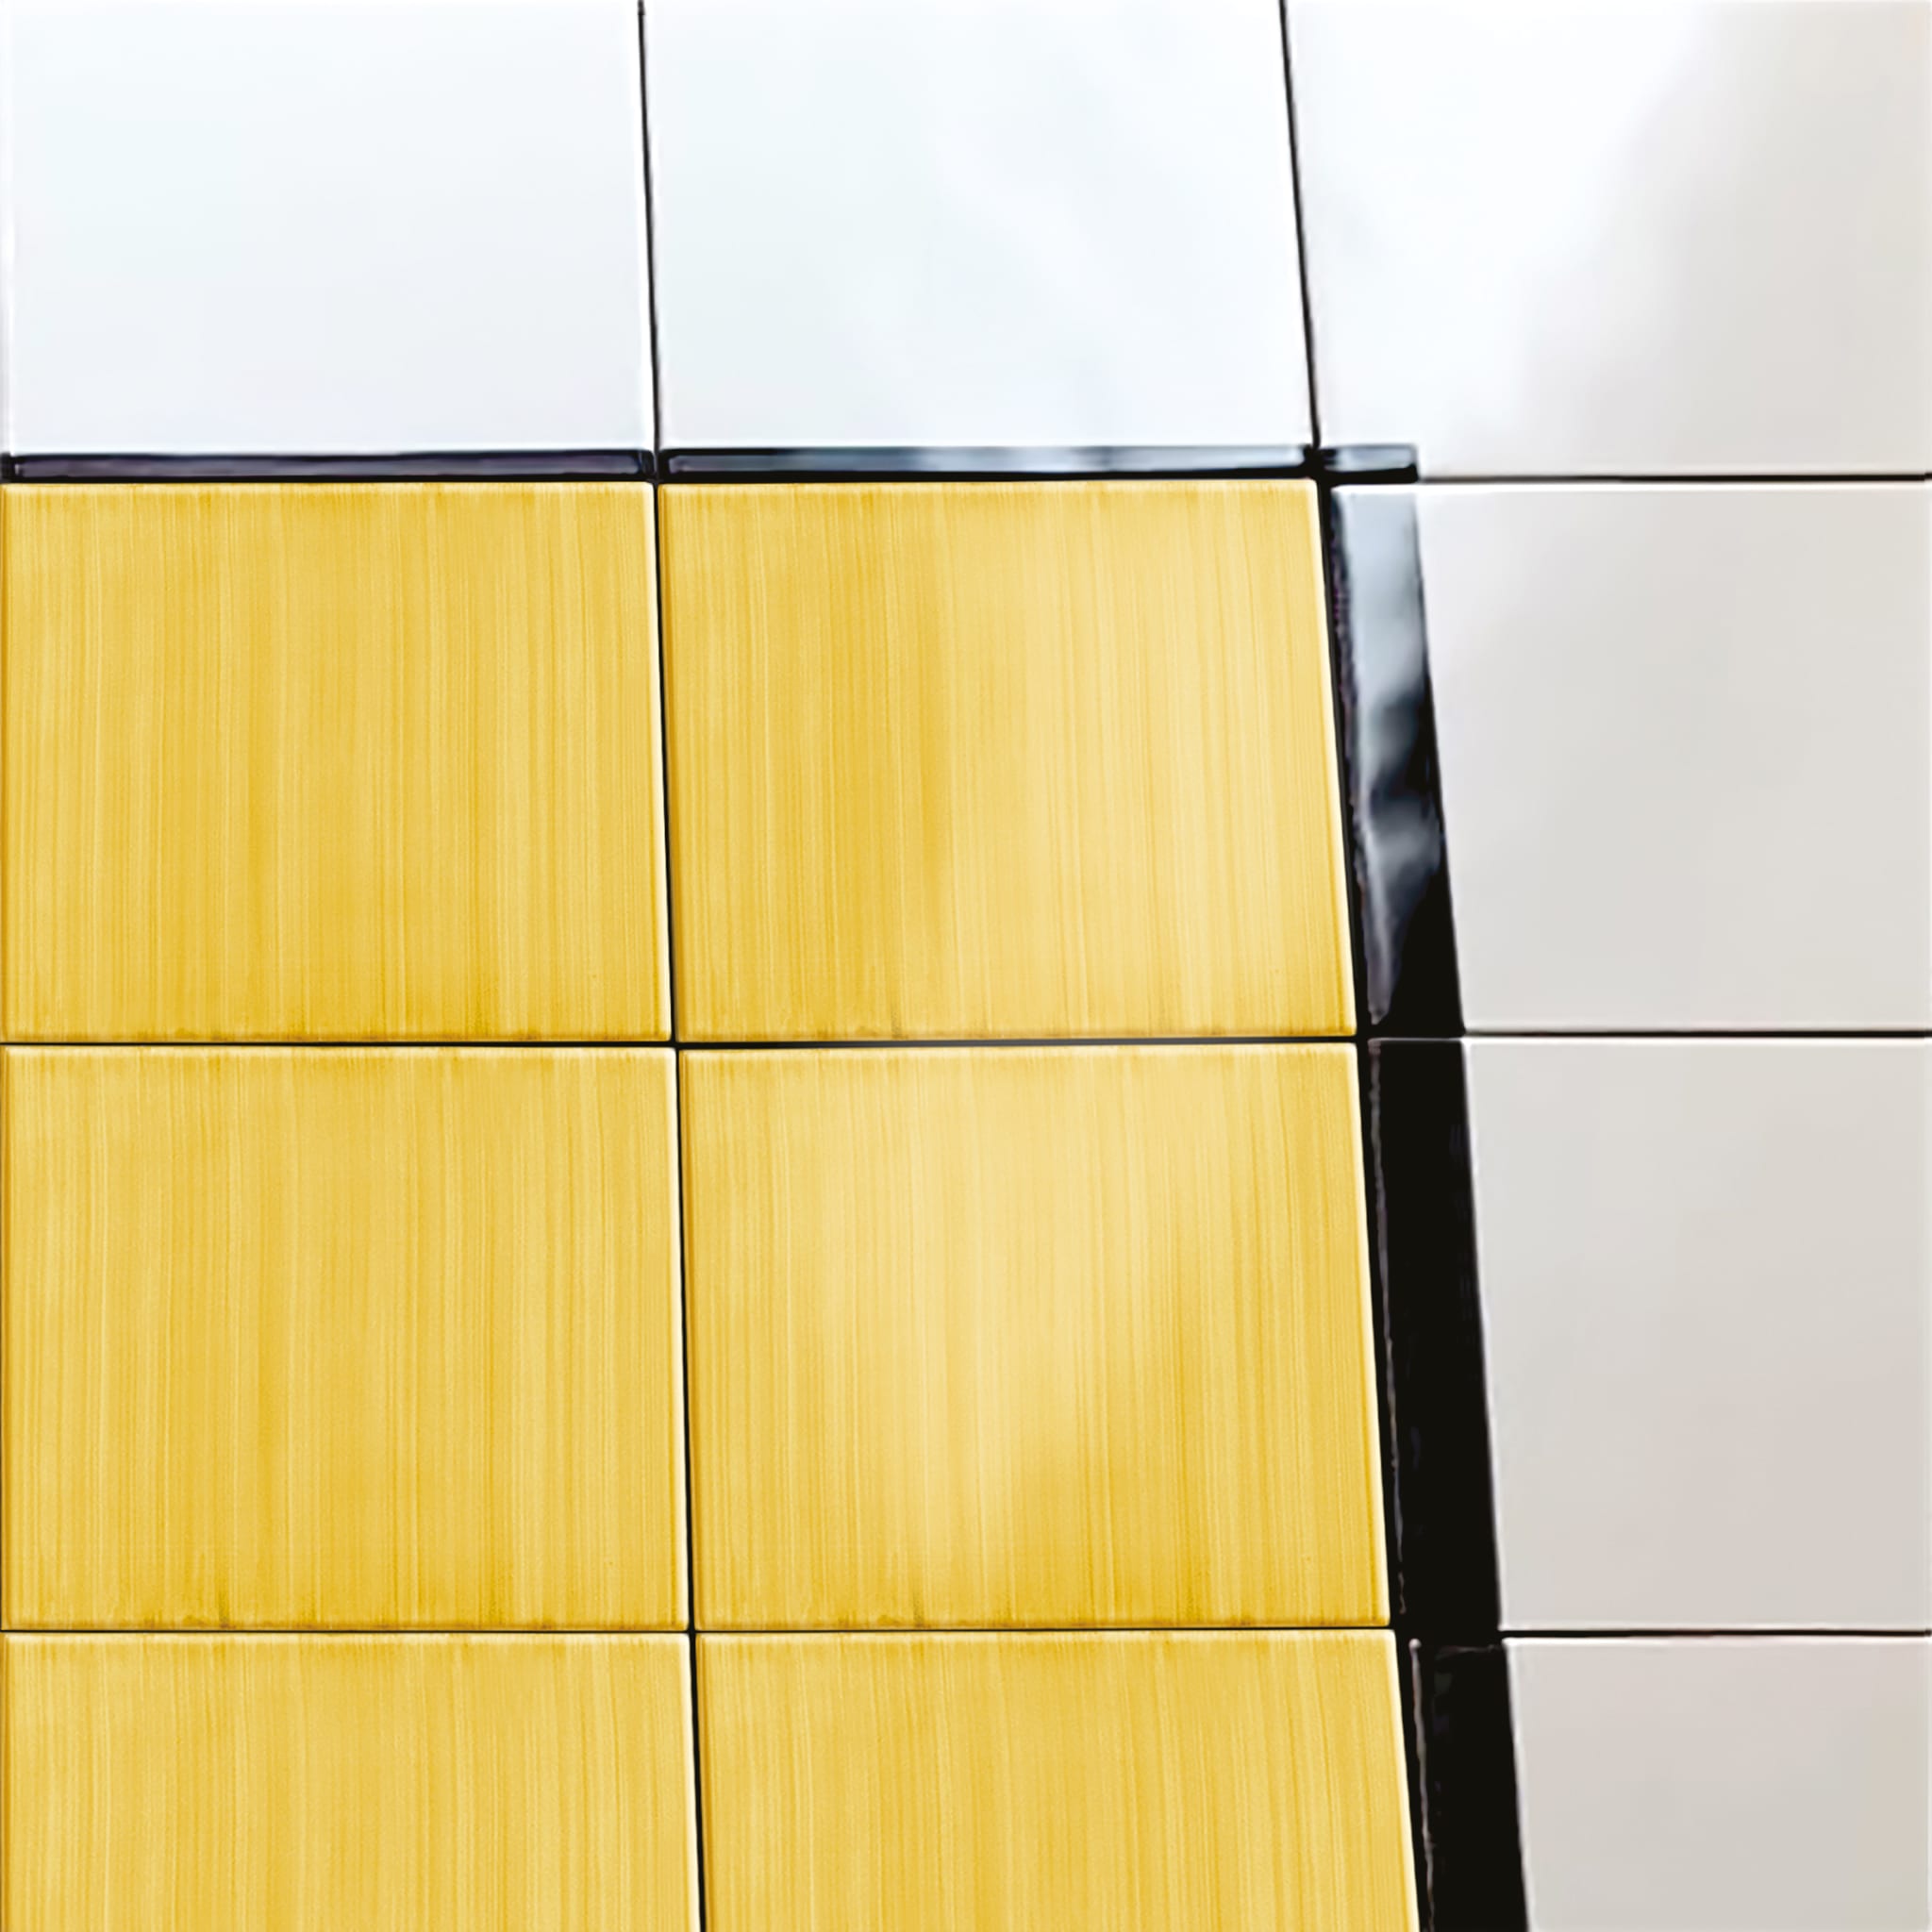 Carpet Total Yellow Ceramic Composition by Giuliano Andrea dell’Uva 160 x 120 - Alternative view 2